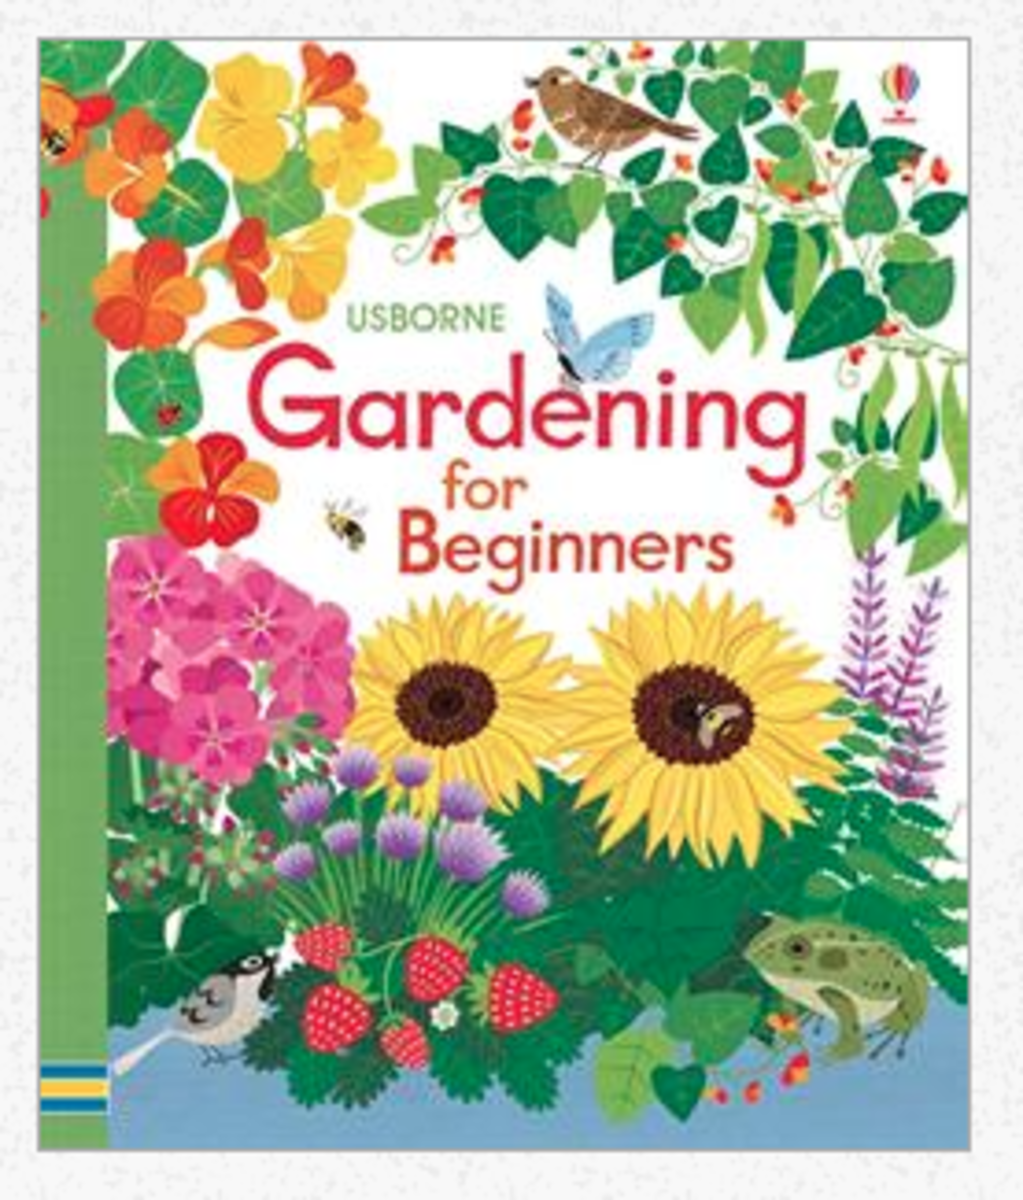 Gardening for beginners!